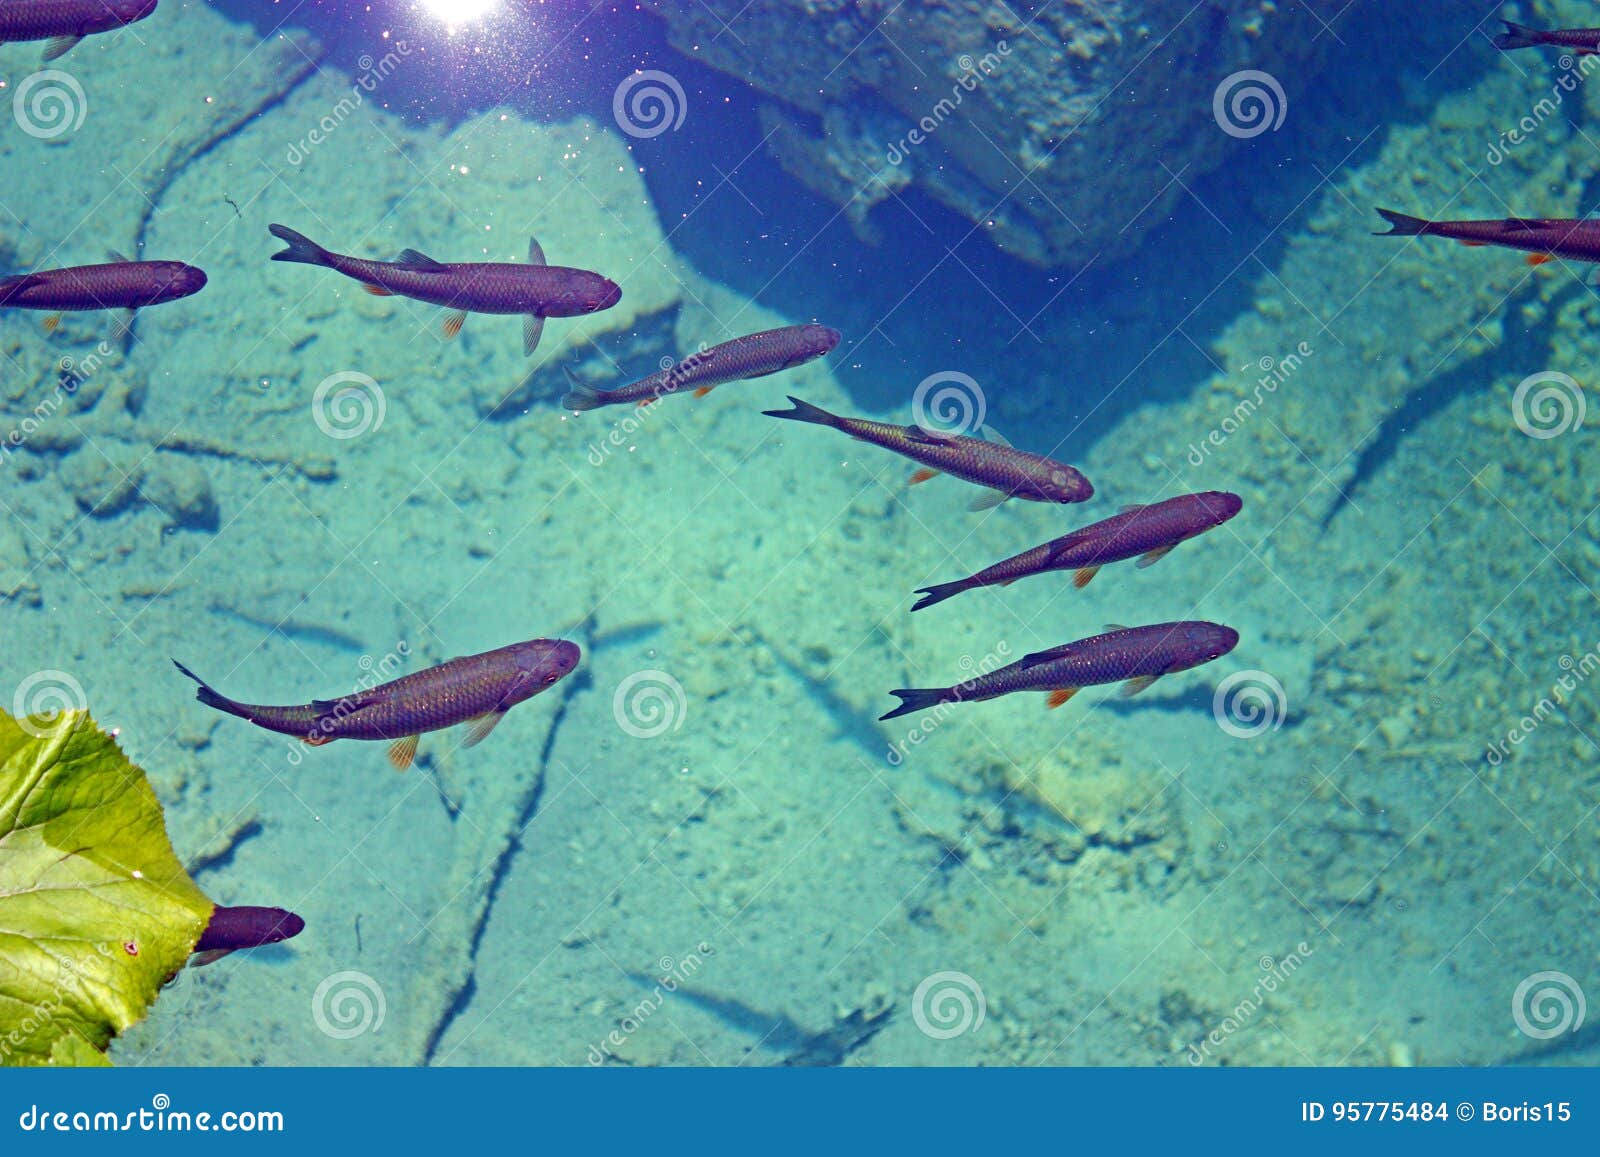 Beautiful Aquarium Crystal Water Small Fish Stock Photo 1172520121